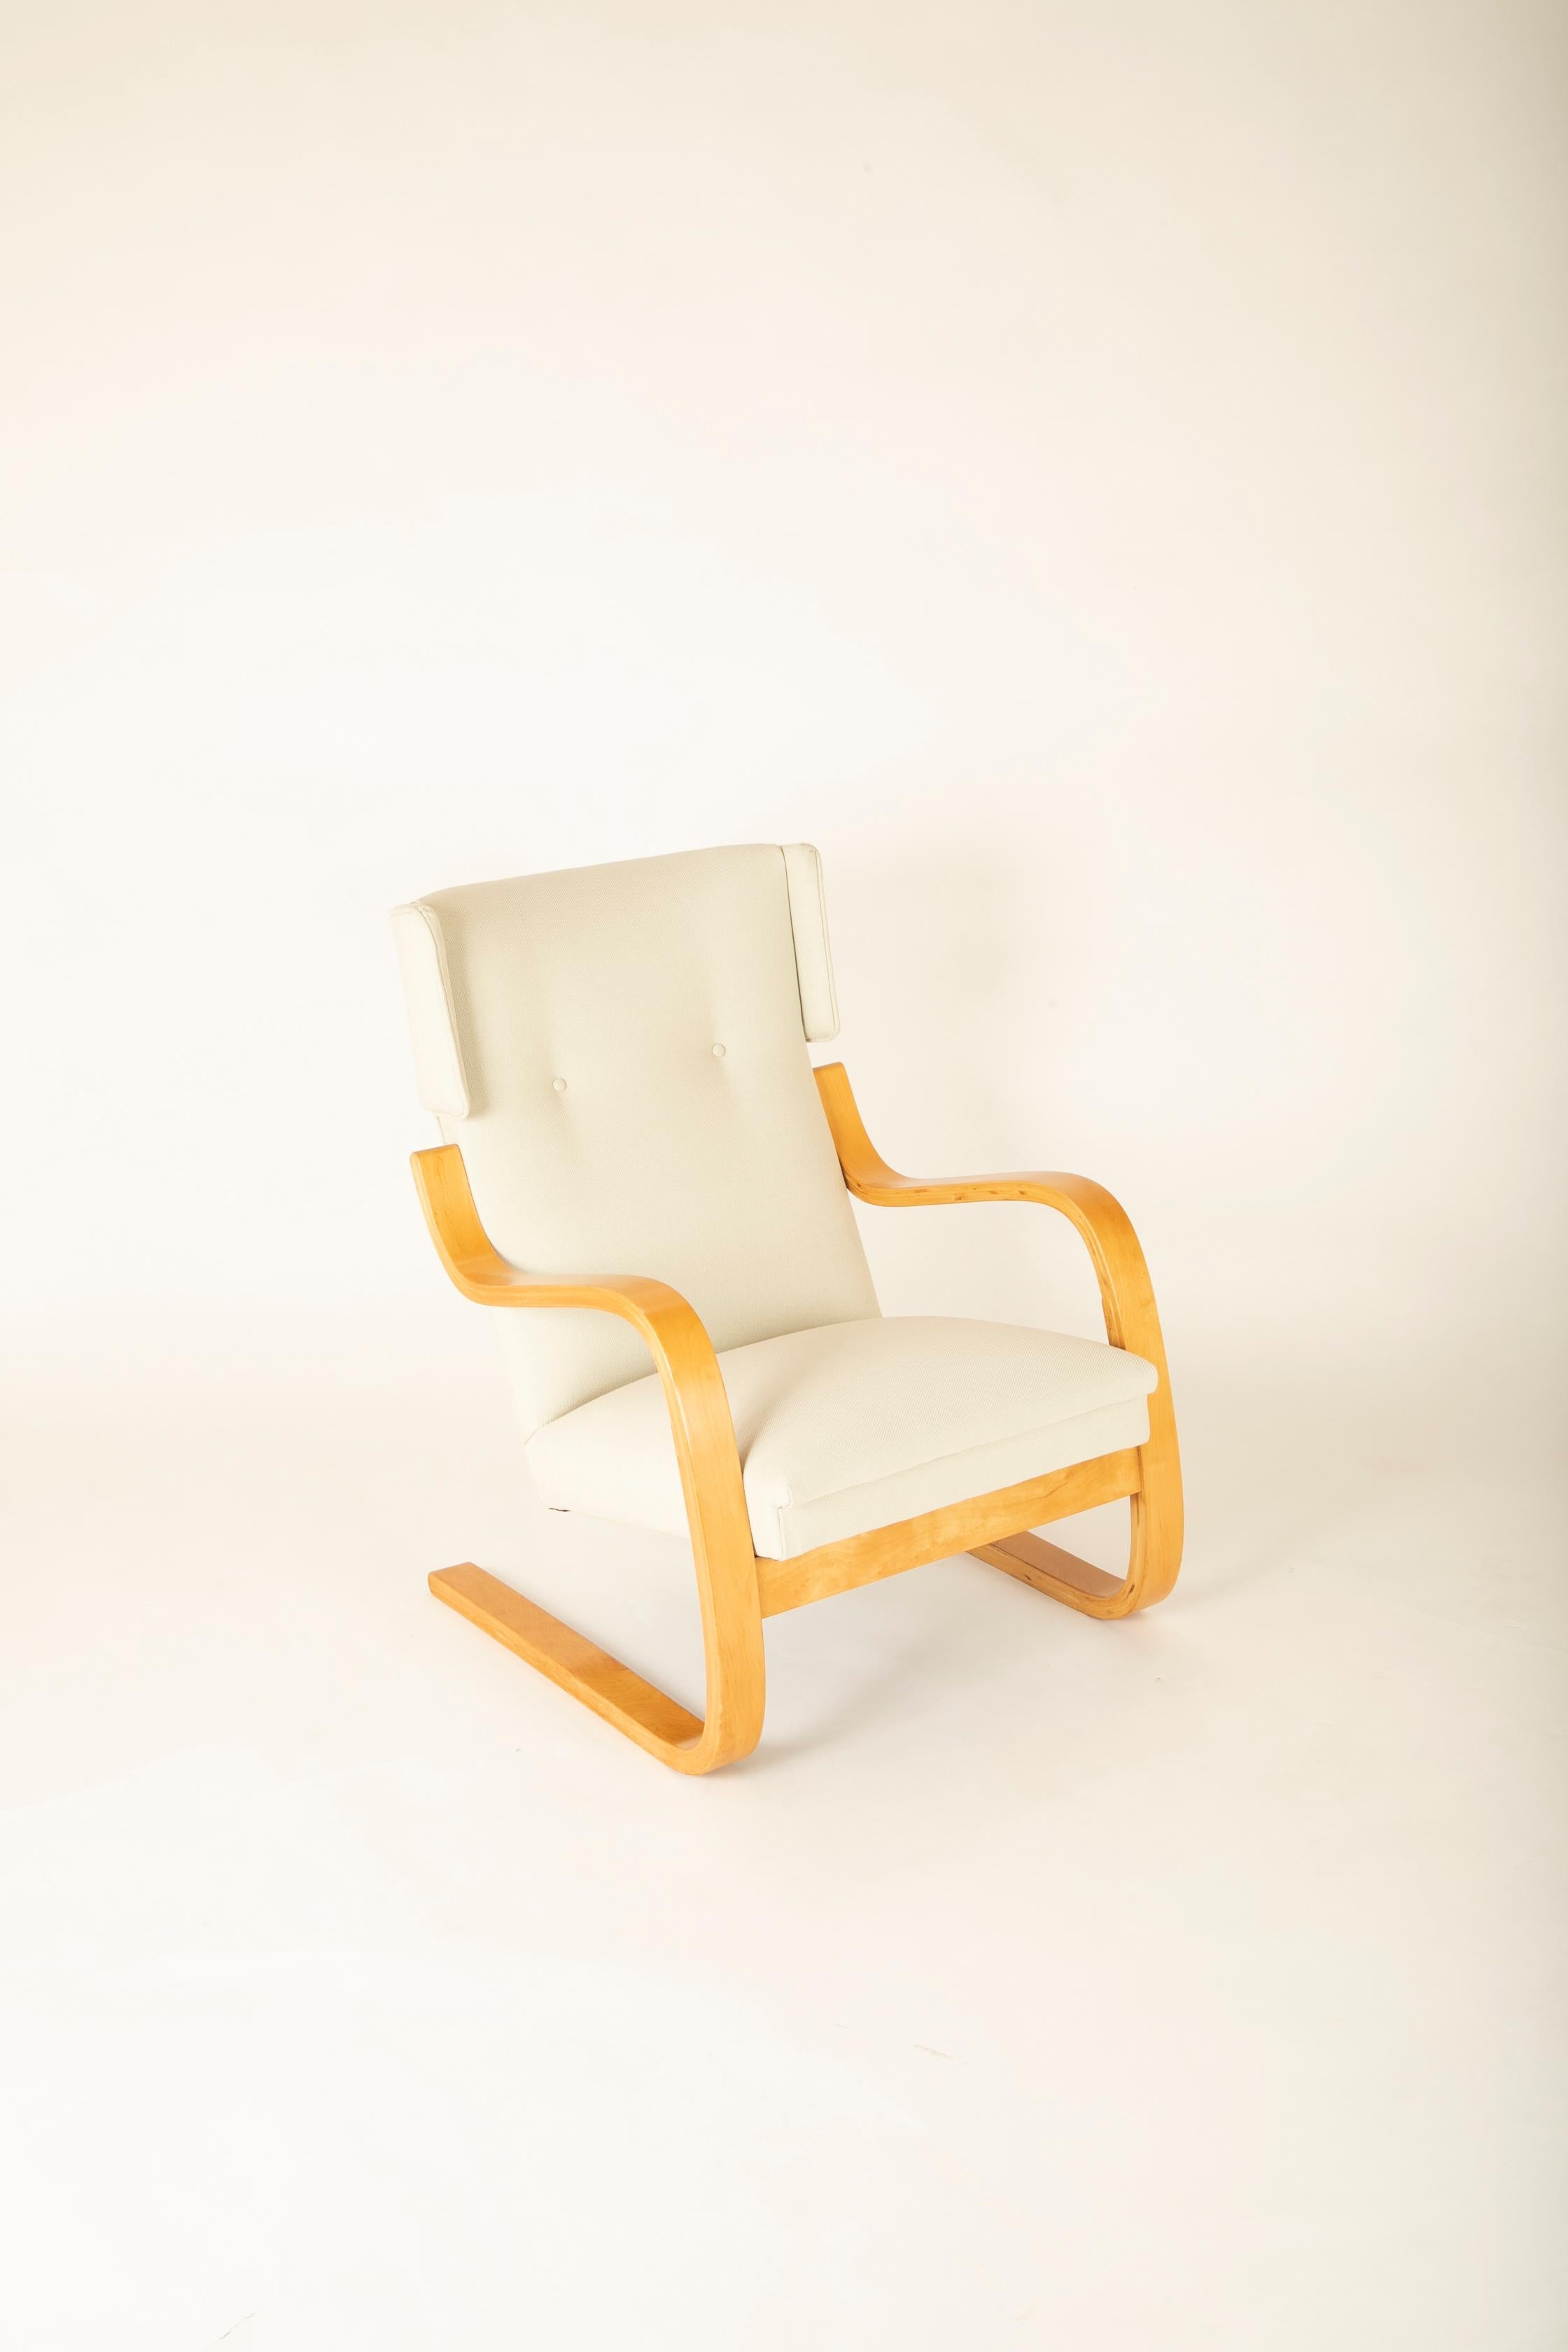 Paire de fauteuils à oreilles en bouleau laminé, conçus par Alvar Aalto. Non marqué mais présumé avoir été produit par Arte dans les années 1970. Nouvellement tapissé en tissu Delany et Long.